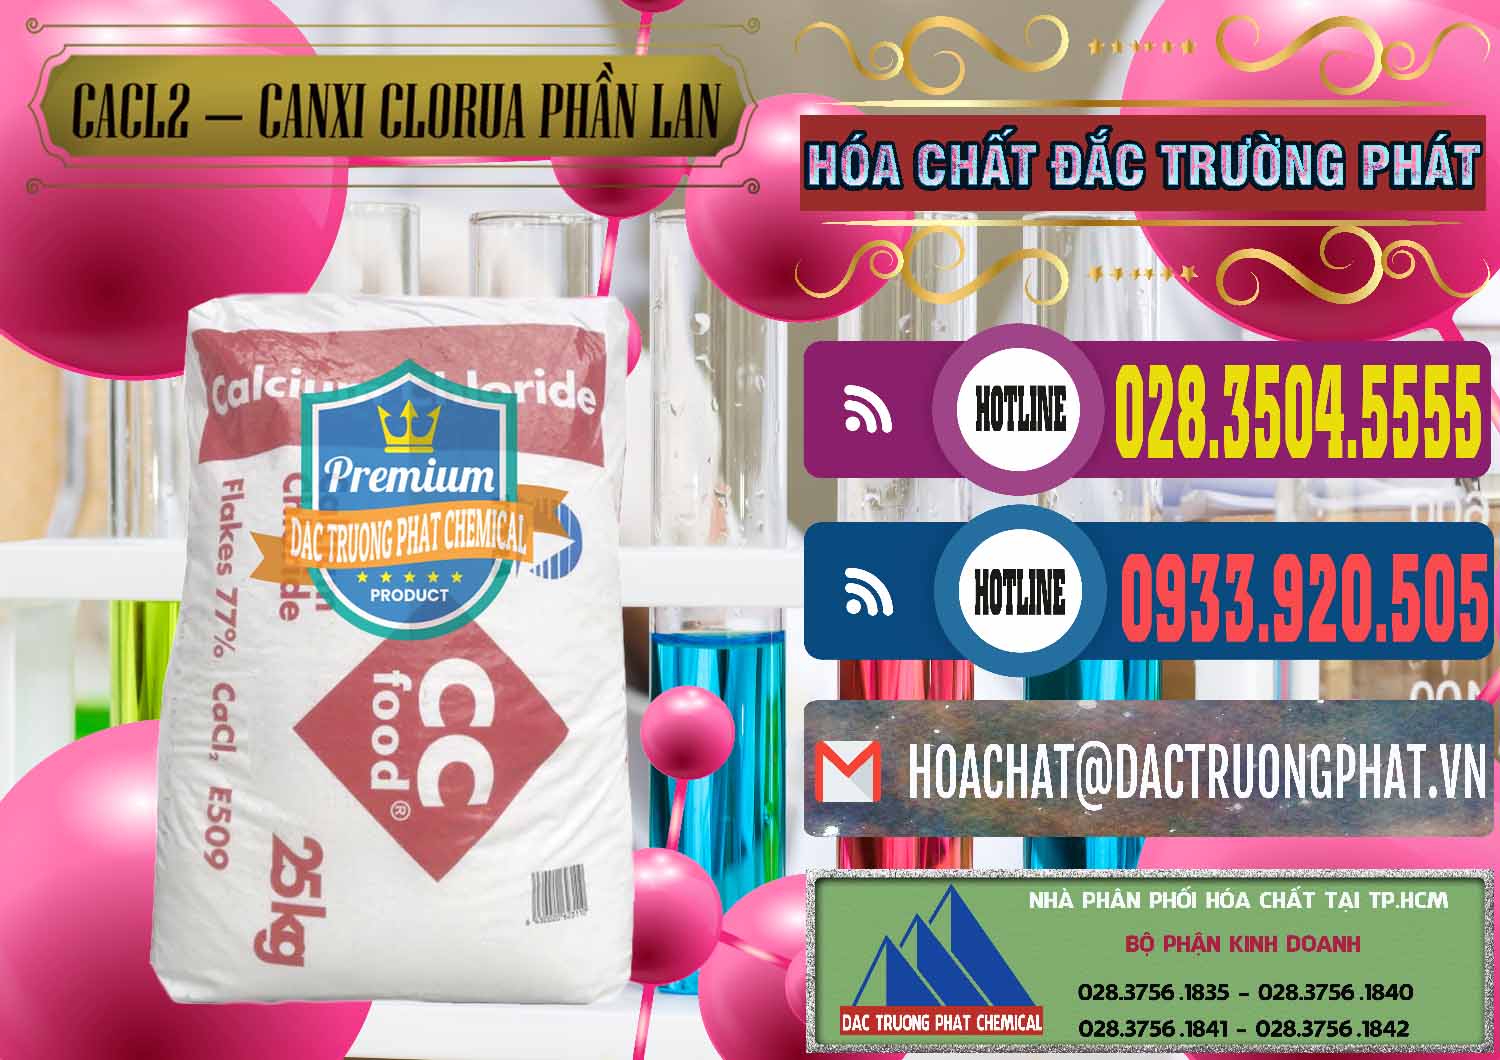 Cty chuyên bán - cung cấp CaCl2 – Canxi Clorua Dạng Vảy 77% Tetra Phần Lan Finland - 0353 - Chuyên cung cấp ( phân phối ) hóa chất tại TP.HCM - muabanhoachat.com.vn